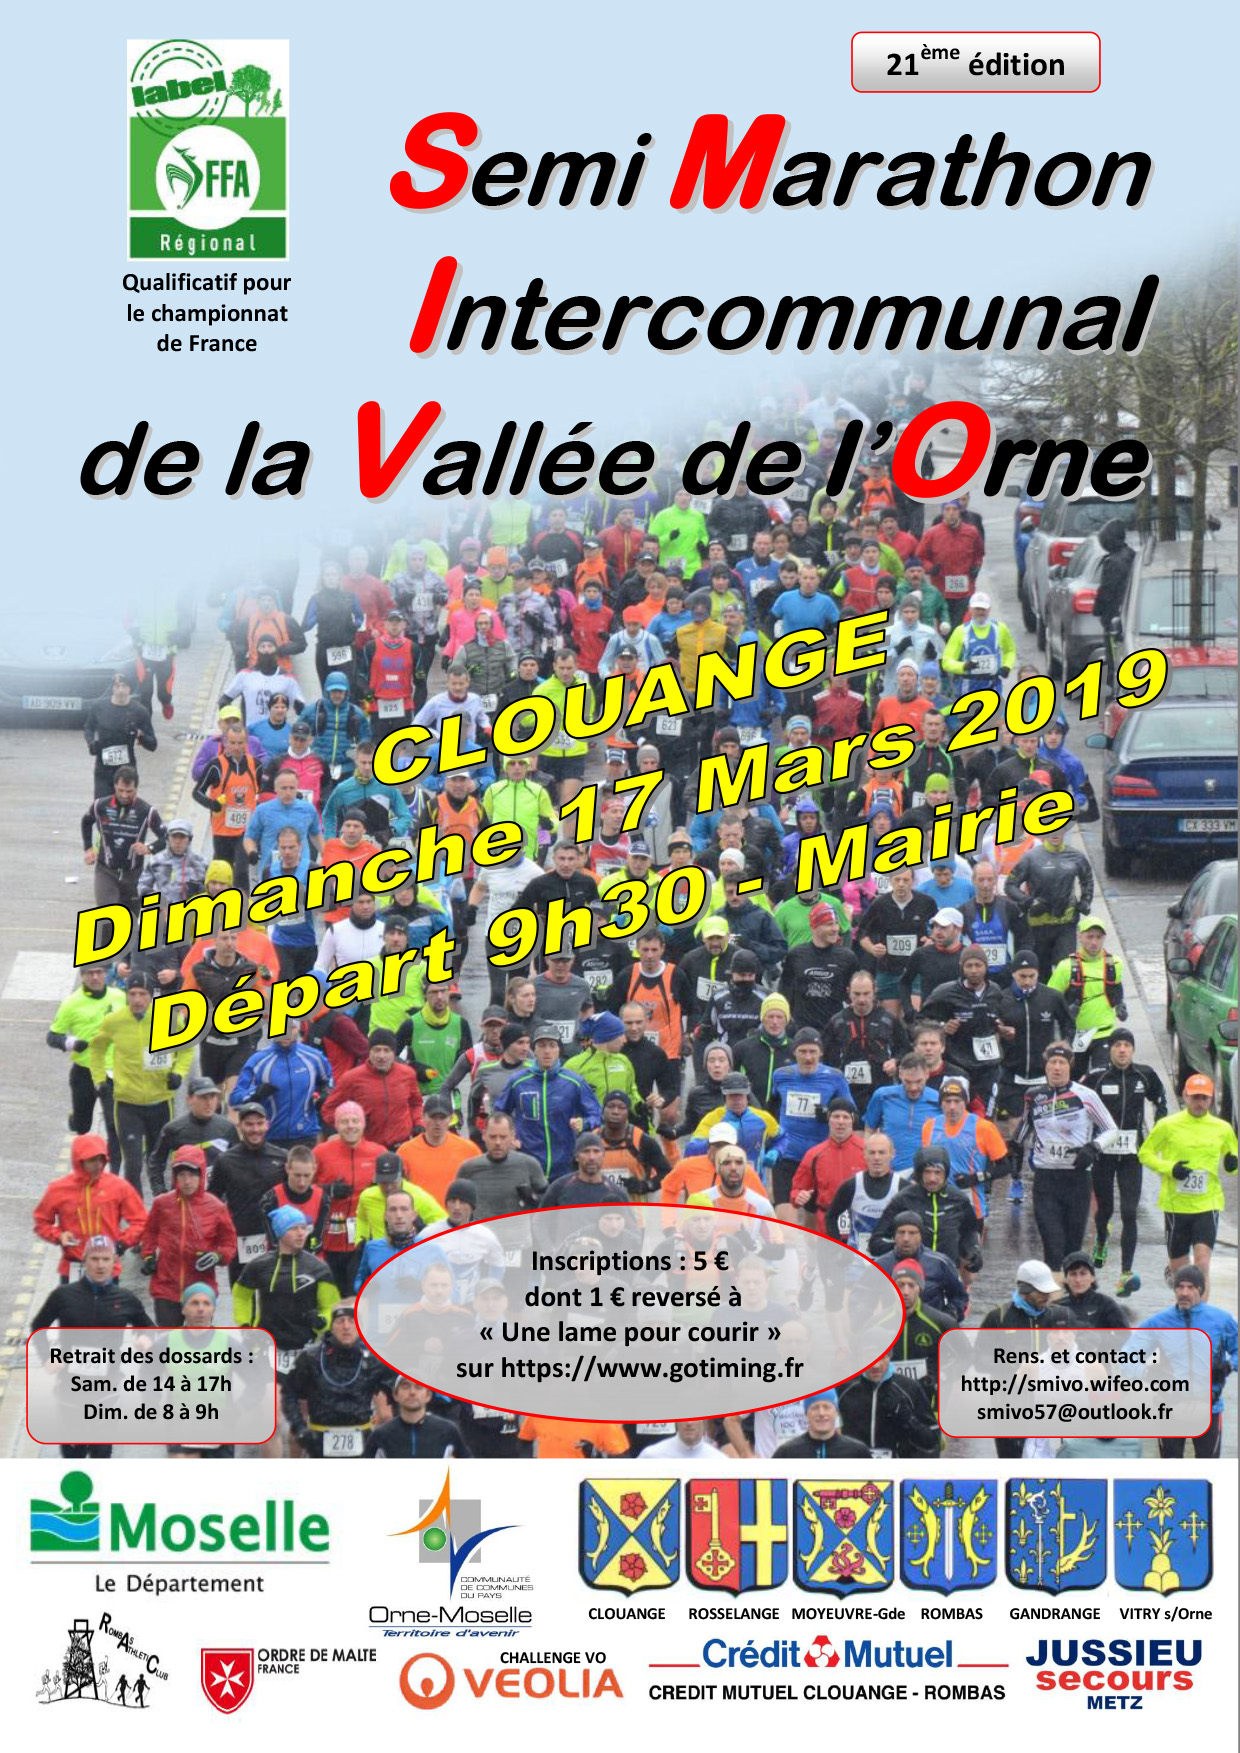 Semi Marathon Intercommunal de la Vallée de l'Orne